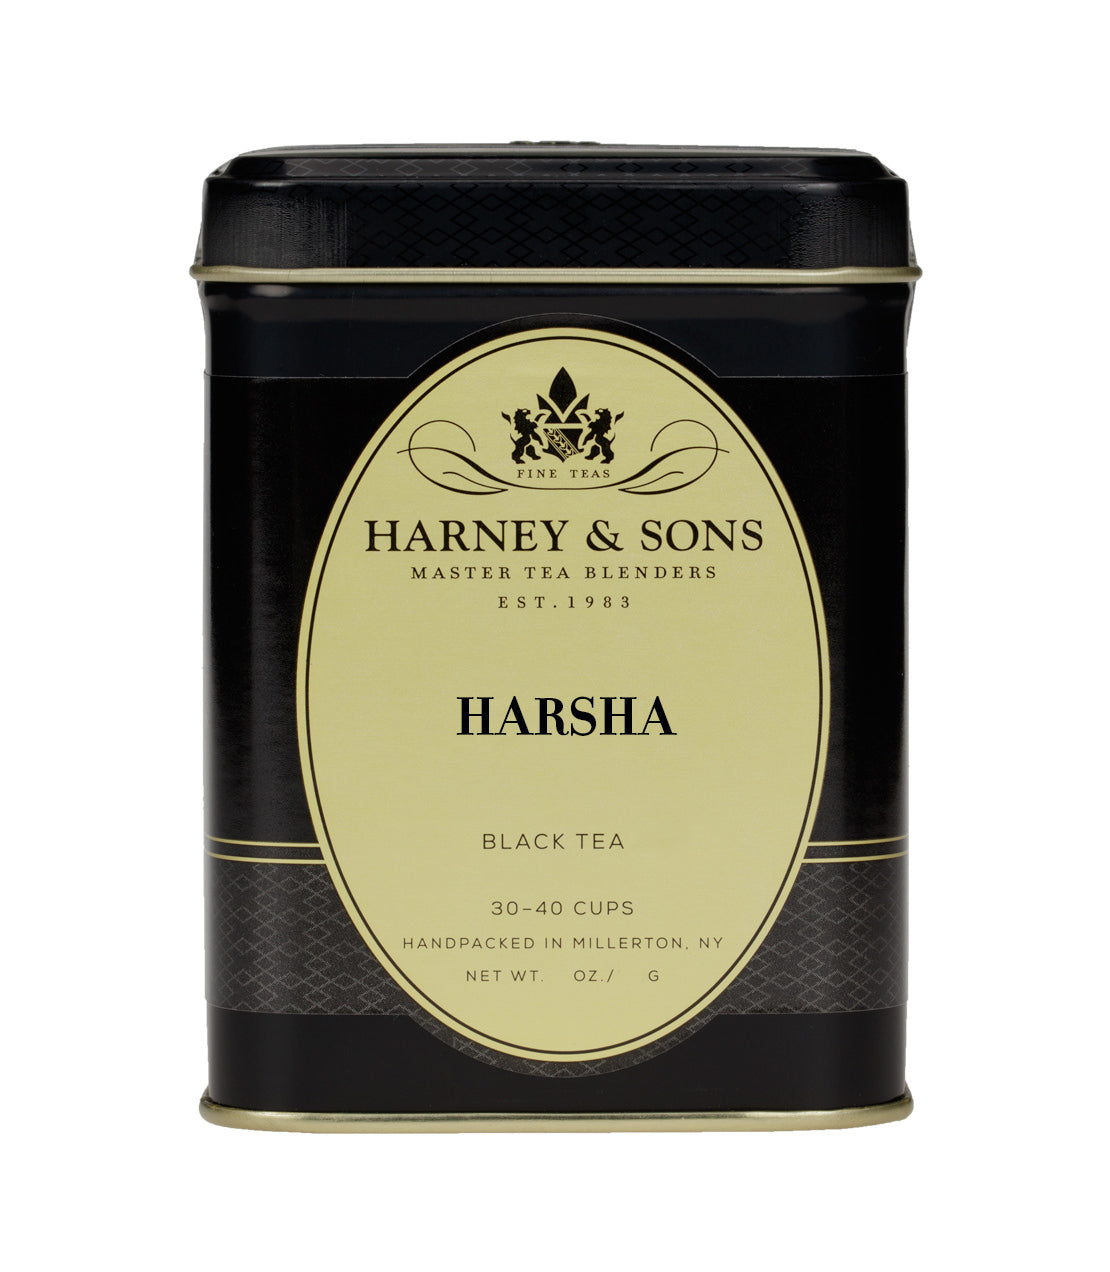 HarSha - Loose 4 oz. Tin - Harney & Sons Fine Teas